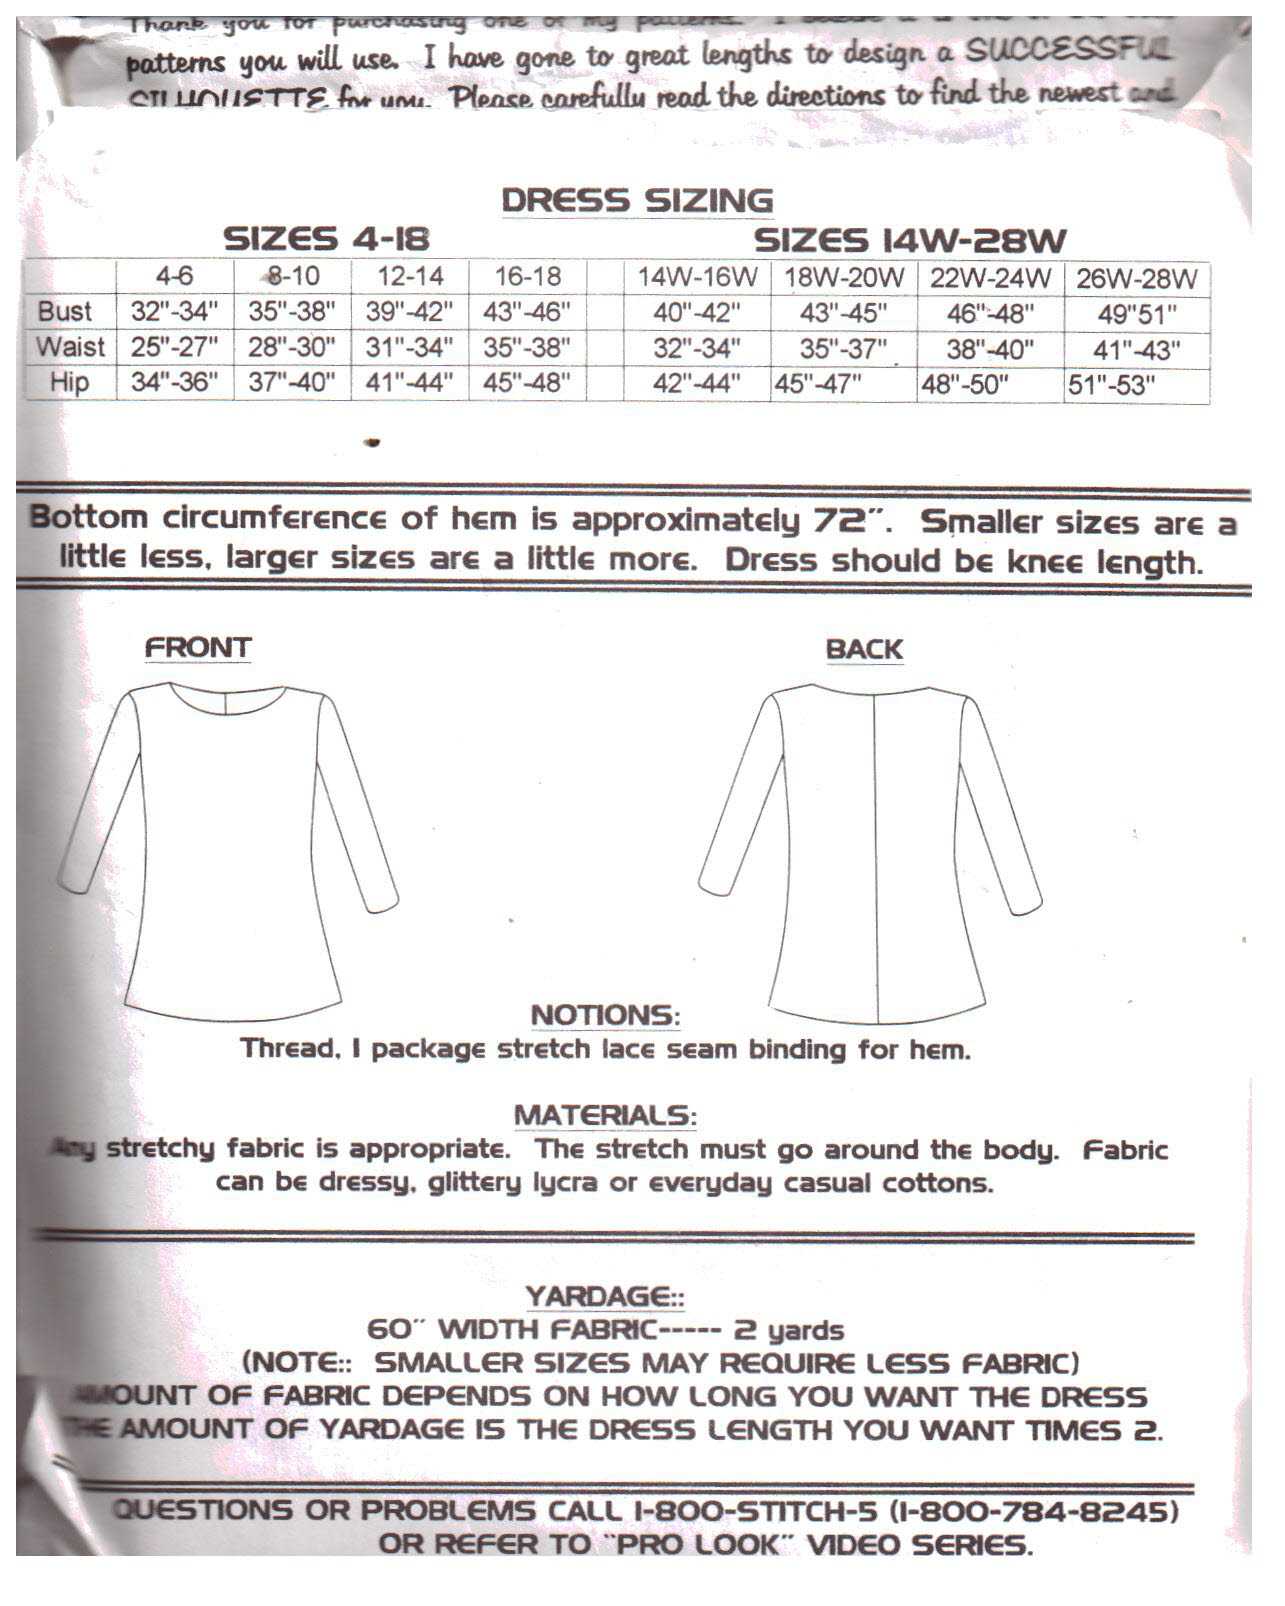 Silhouettes 4000 Swing Dress Size: 4-18 & 14W-28W Uncut Sewing Pattern